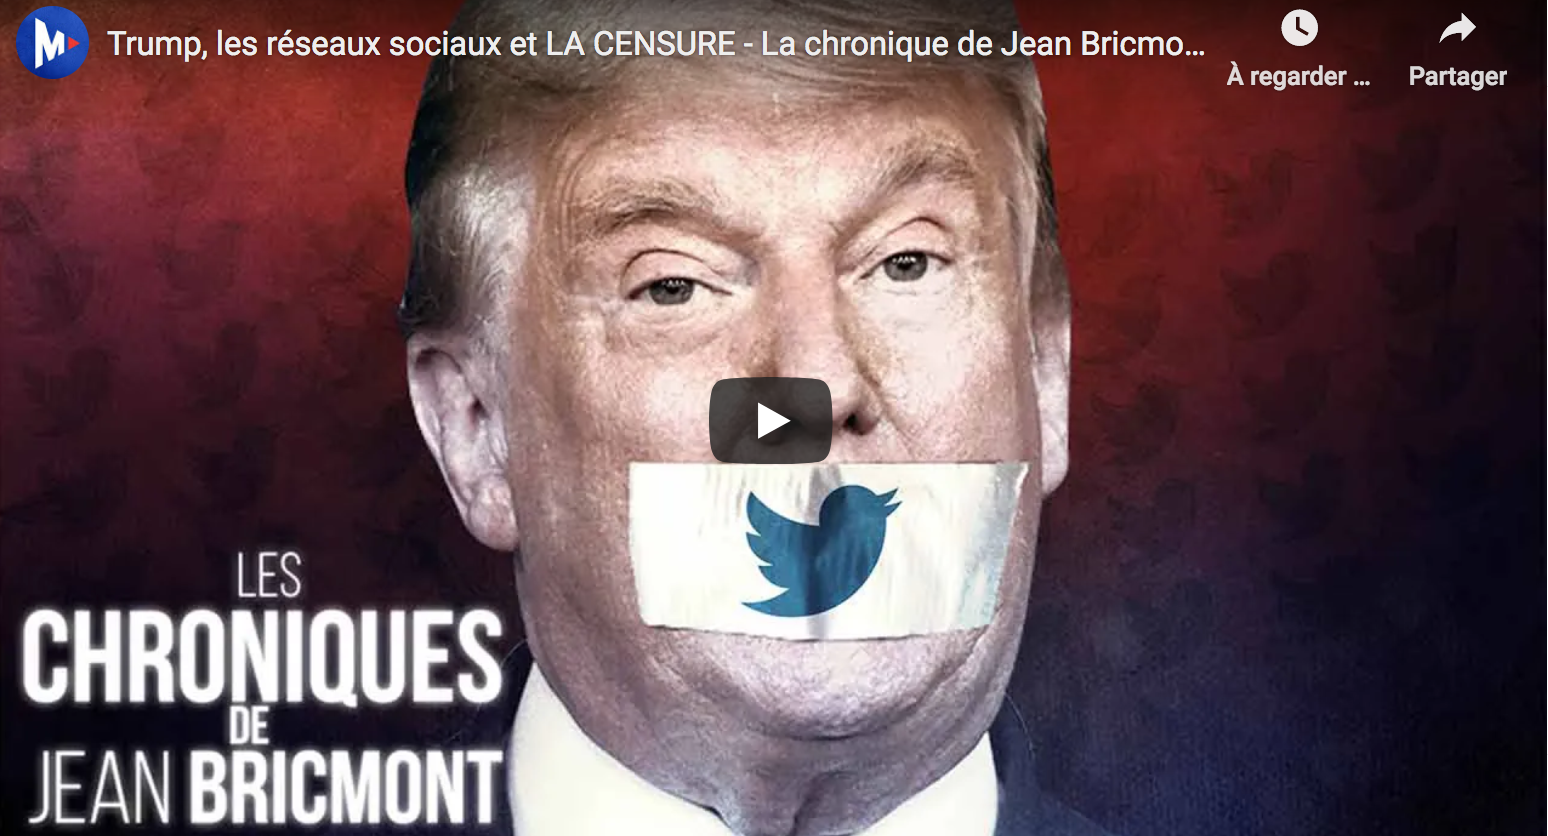 Donald Trump, les réseaux sociaux et la censure (La chronique de Jean Bricmont)